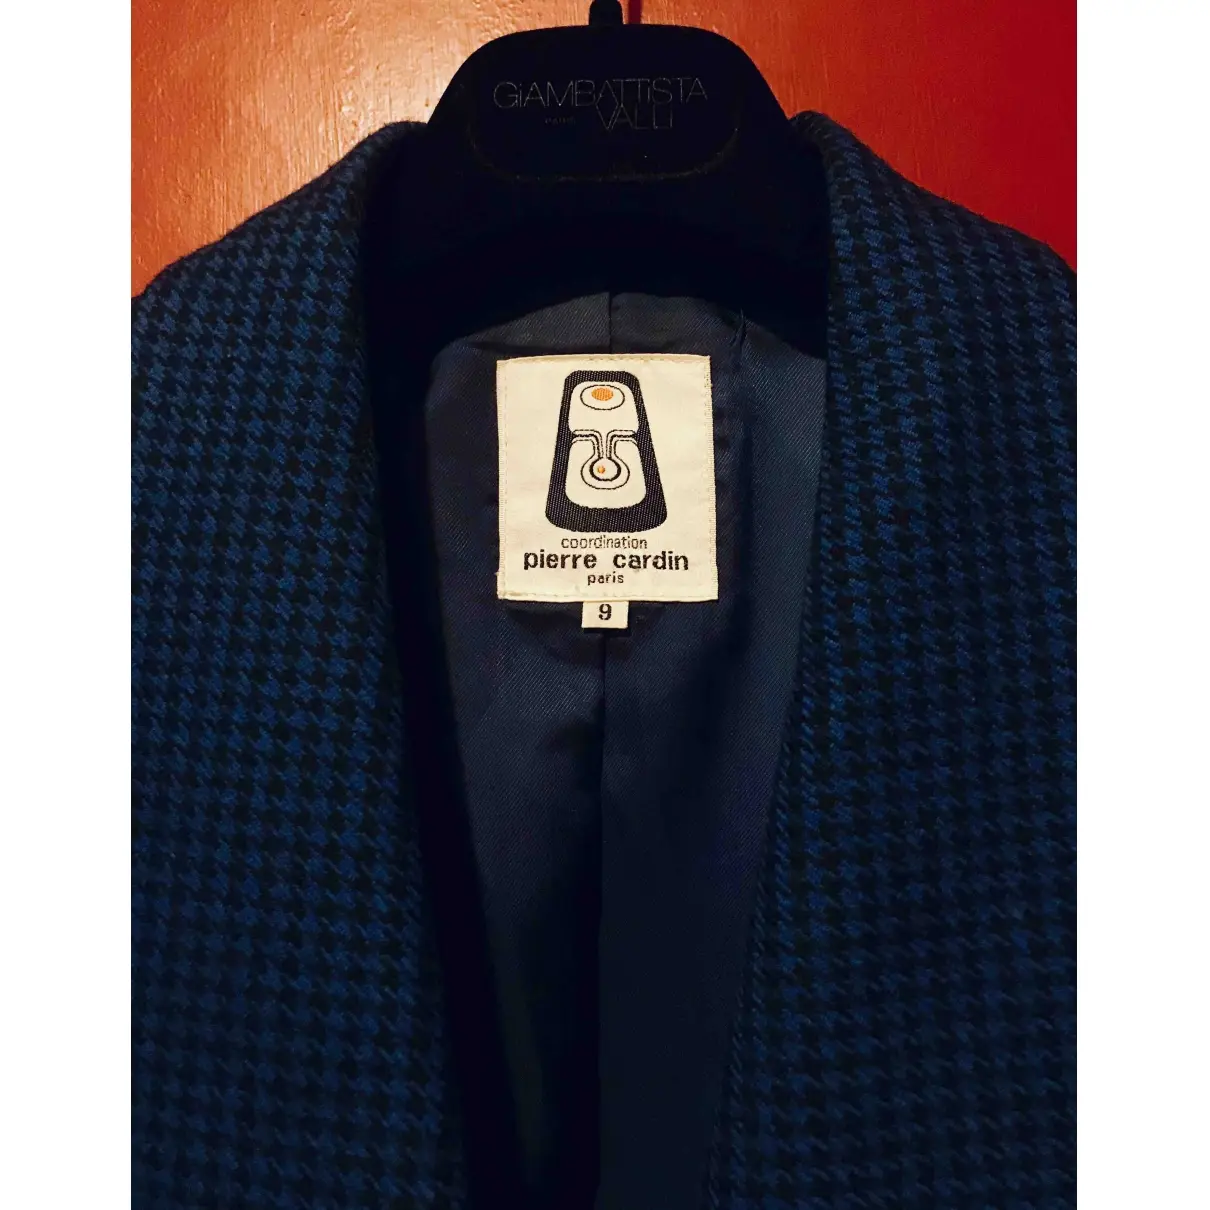 Buy Pierre Cardin Wool jacket online